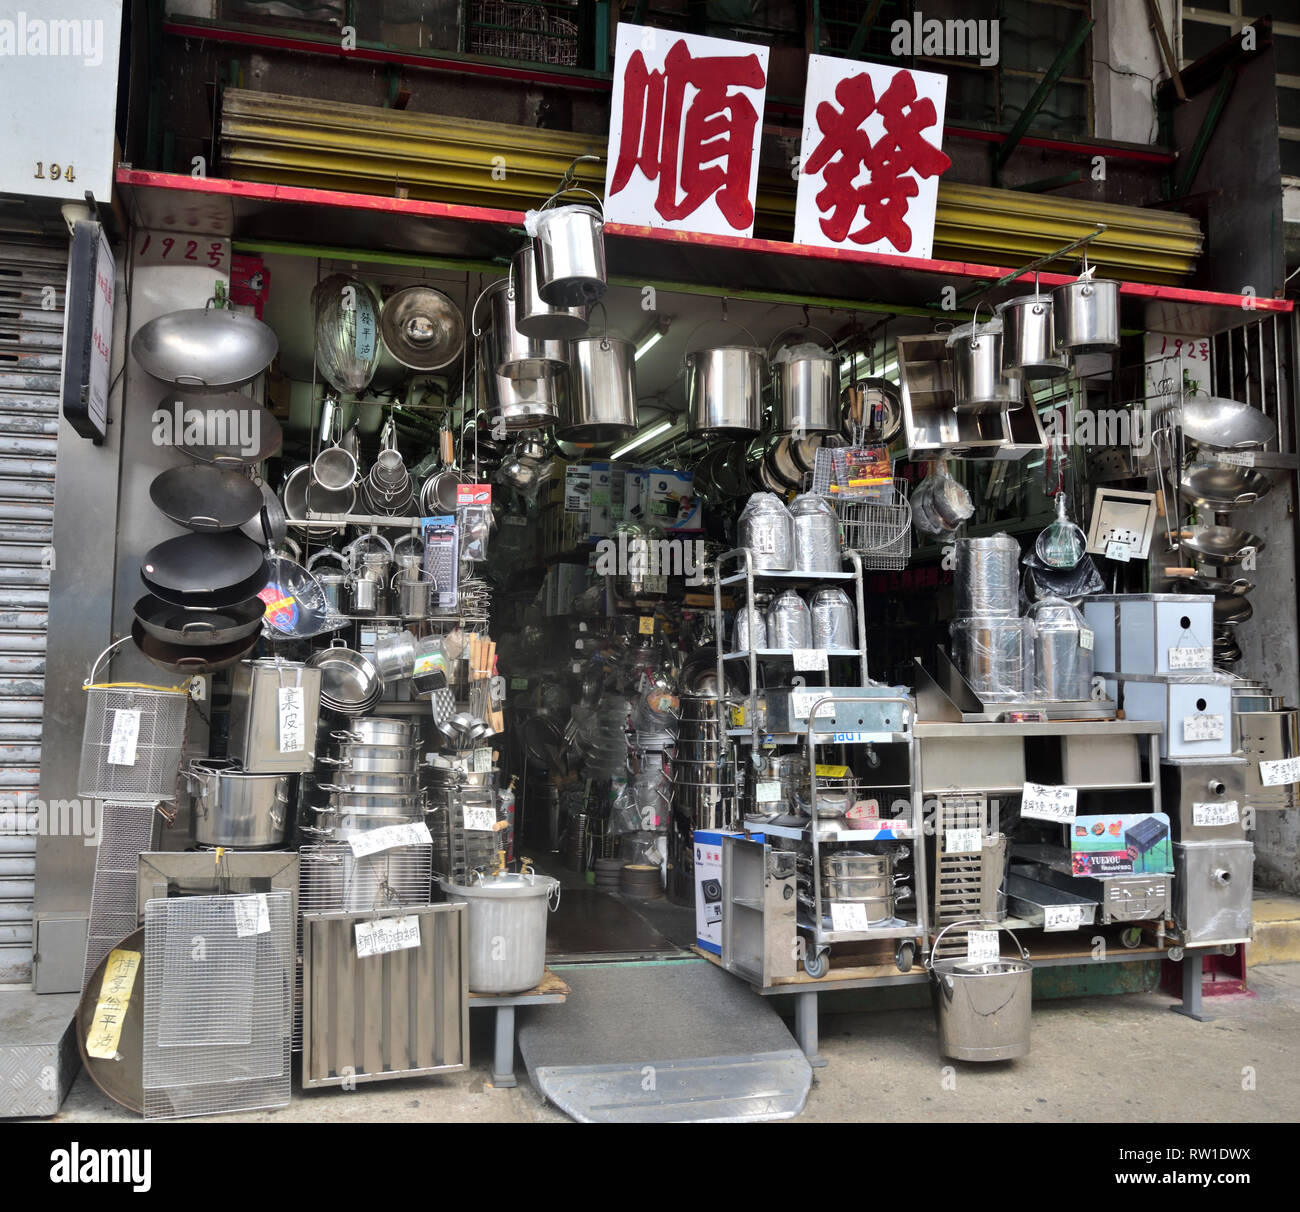 Magasin de métaux vendant toutes sortes d'ustensiles de cuisine et d'articles ménagers à Yau ma Tei, Hong Kong. Banque D'Images